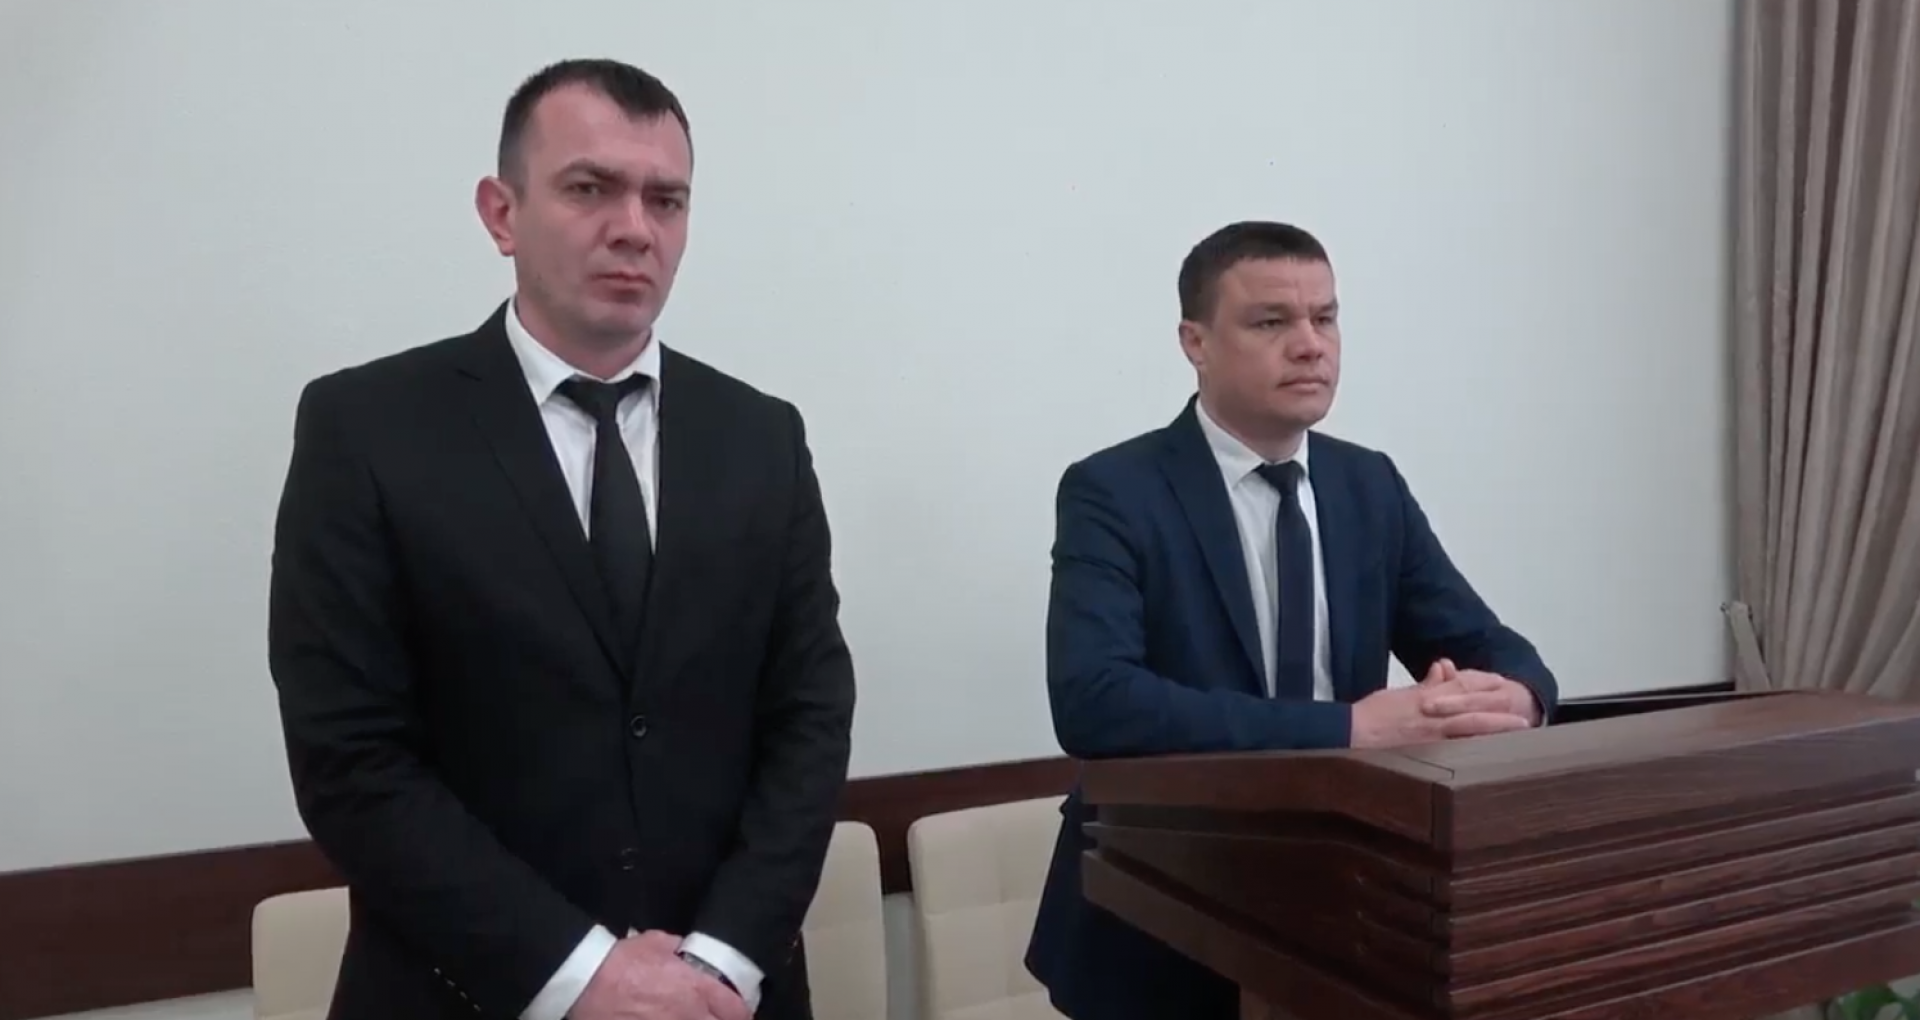 Procurorul din cadrul Procuraturii raionului Nisporeni Andrei Lesnic, care anterior a fost trimis pe banca acuzațiilor pentru complicitate la pregătirea infracțiunii de amestec în înfăptuirea urmăririi penale, suspendat din funcție